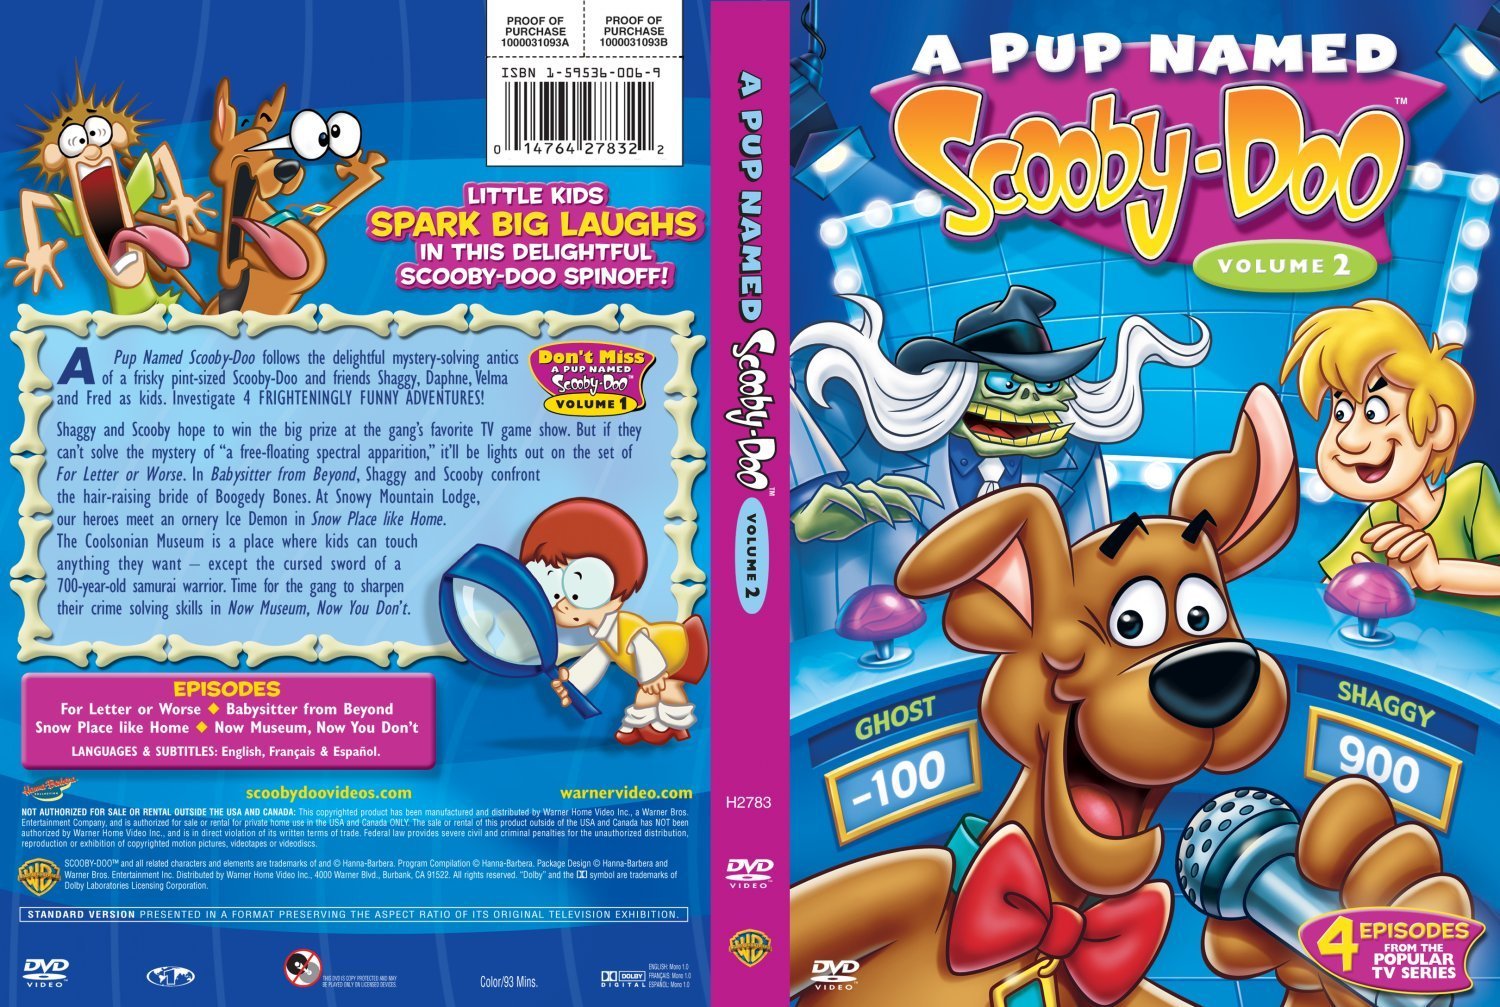 A Pup Named Scooby Doo Vol 2.